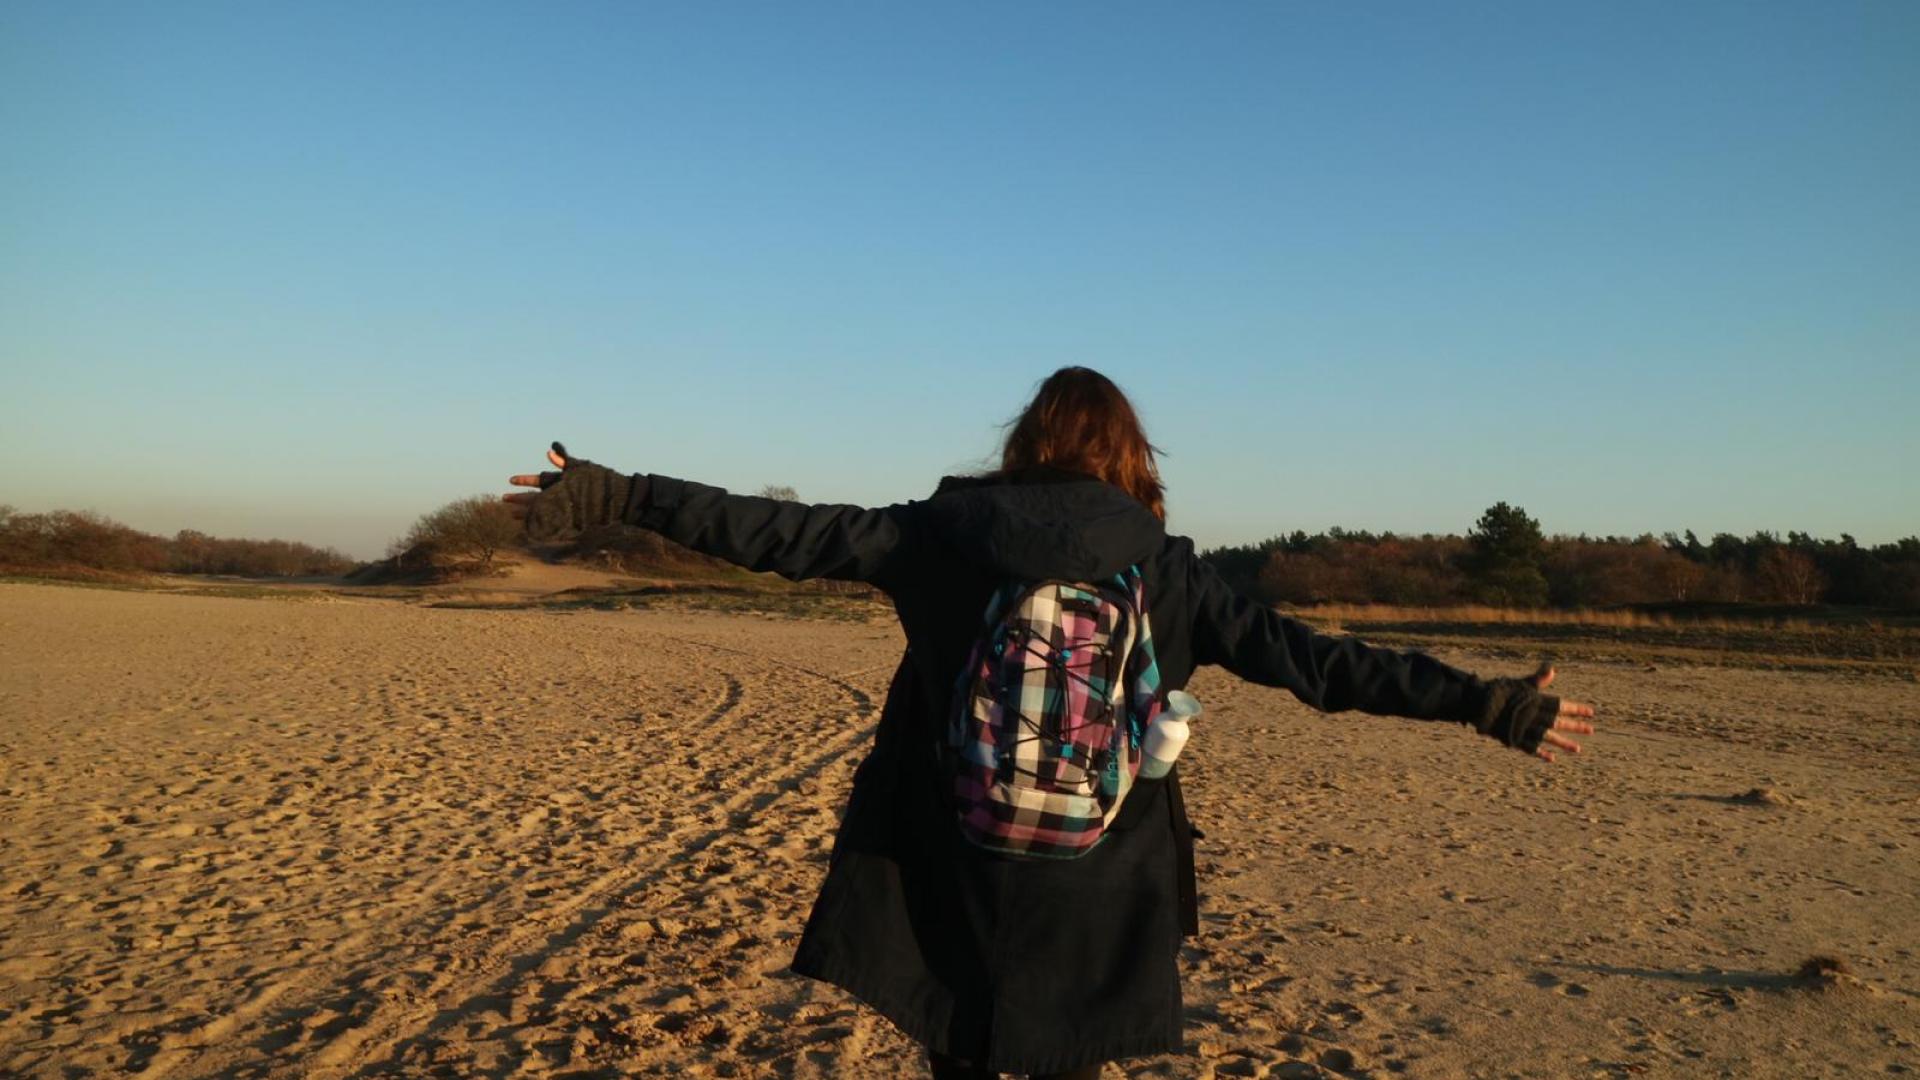 Persoon van achteren gefotografeerd in een zandlandschap.